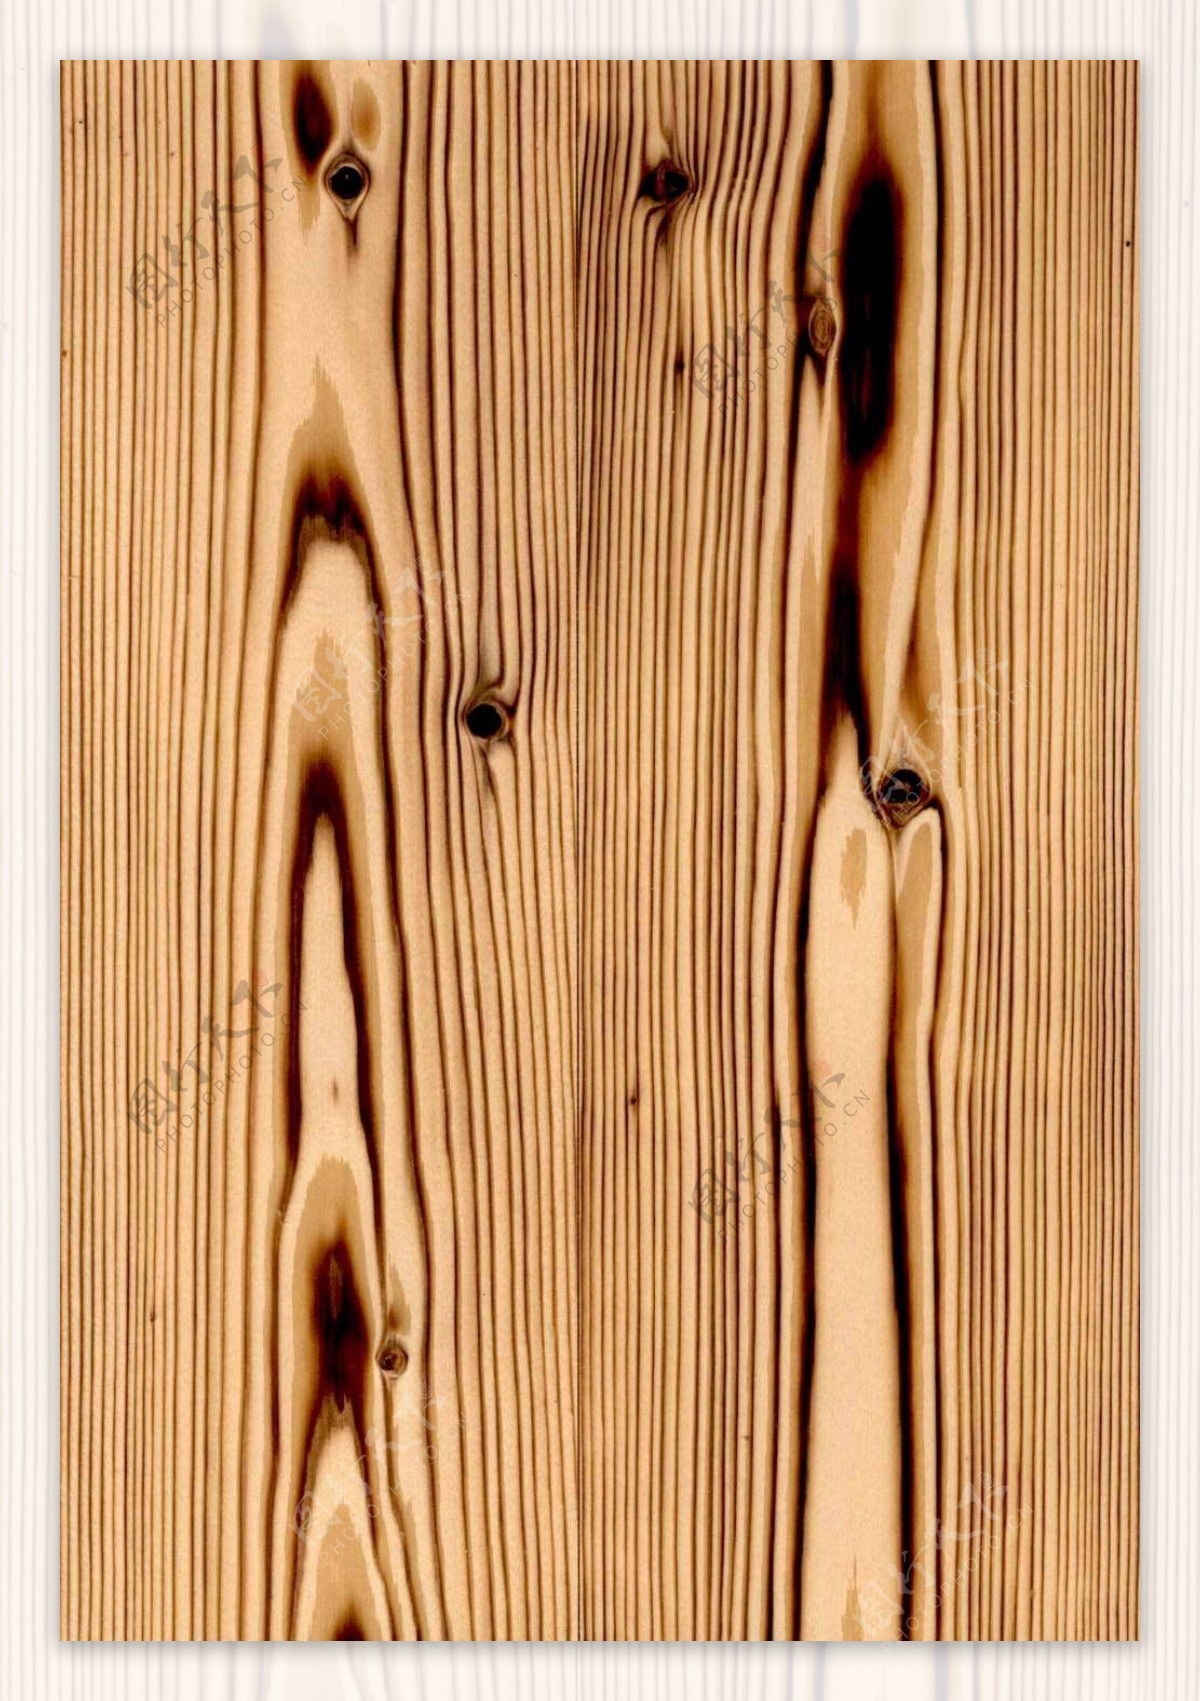 木材木纹浮雕木板装饰板效果图3d素材1